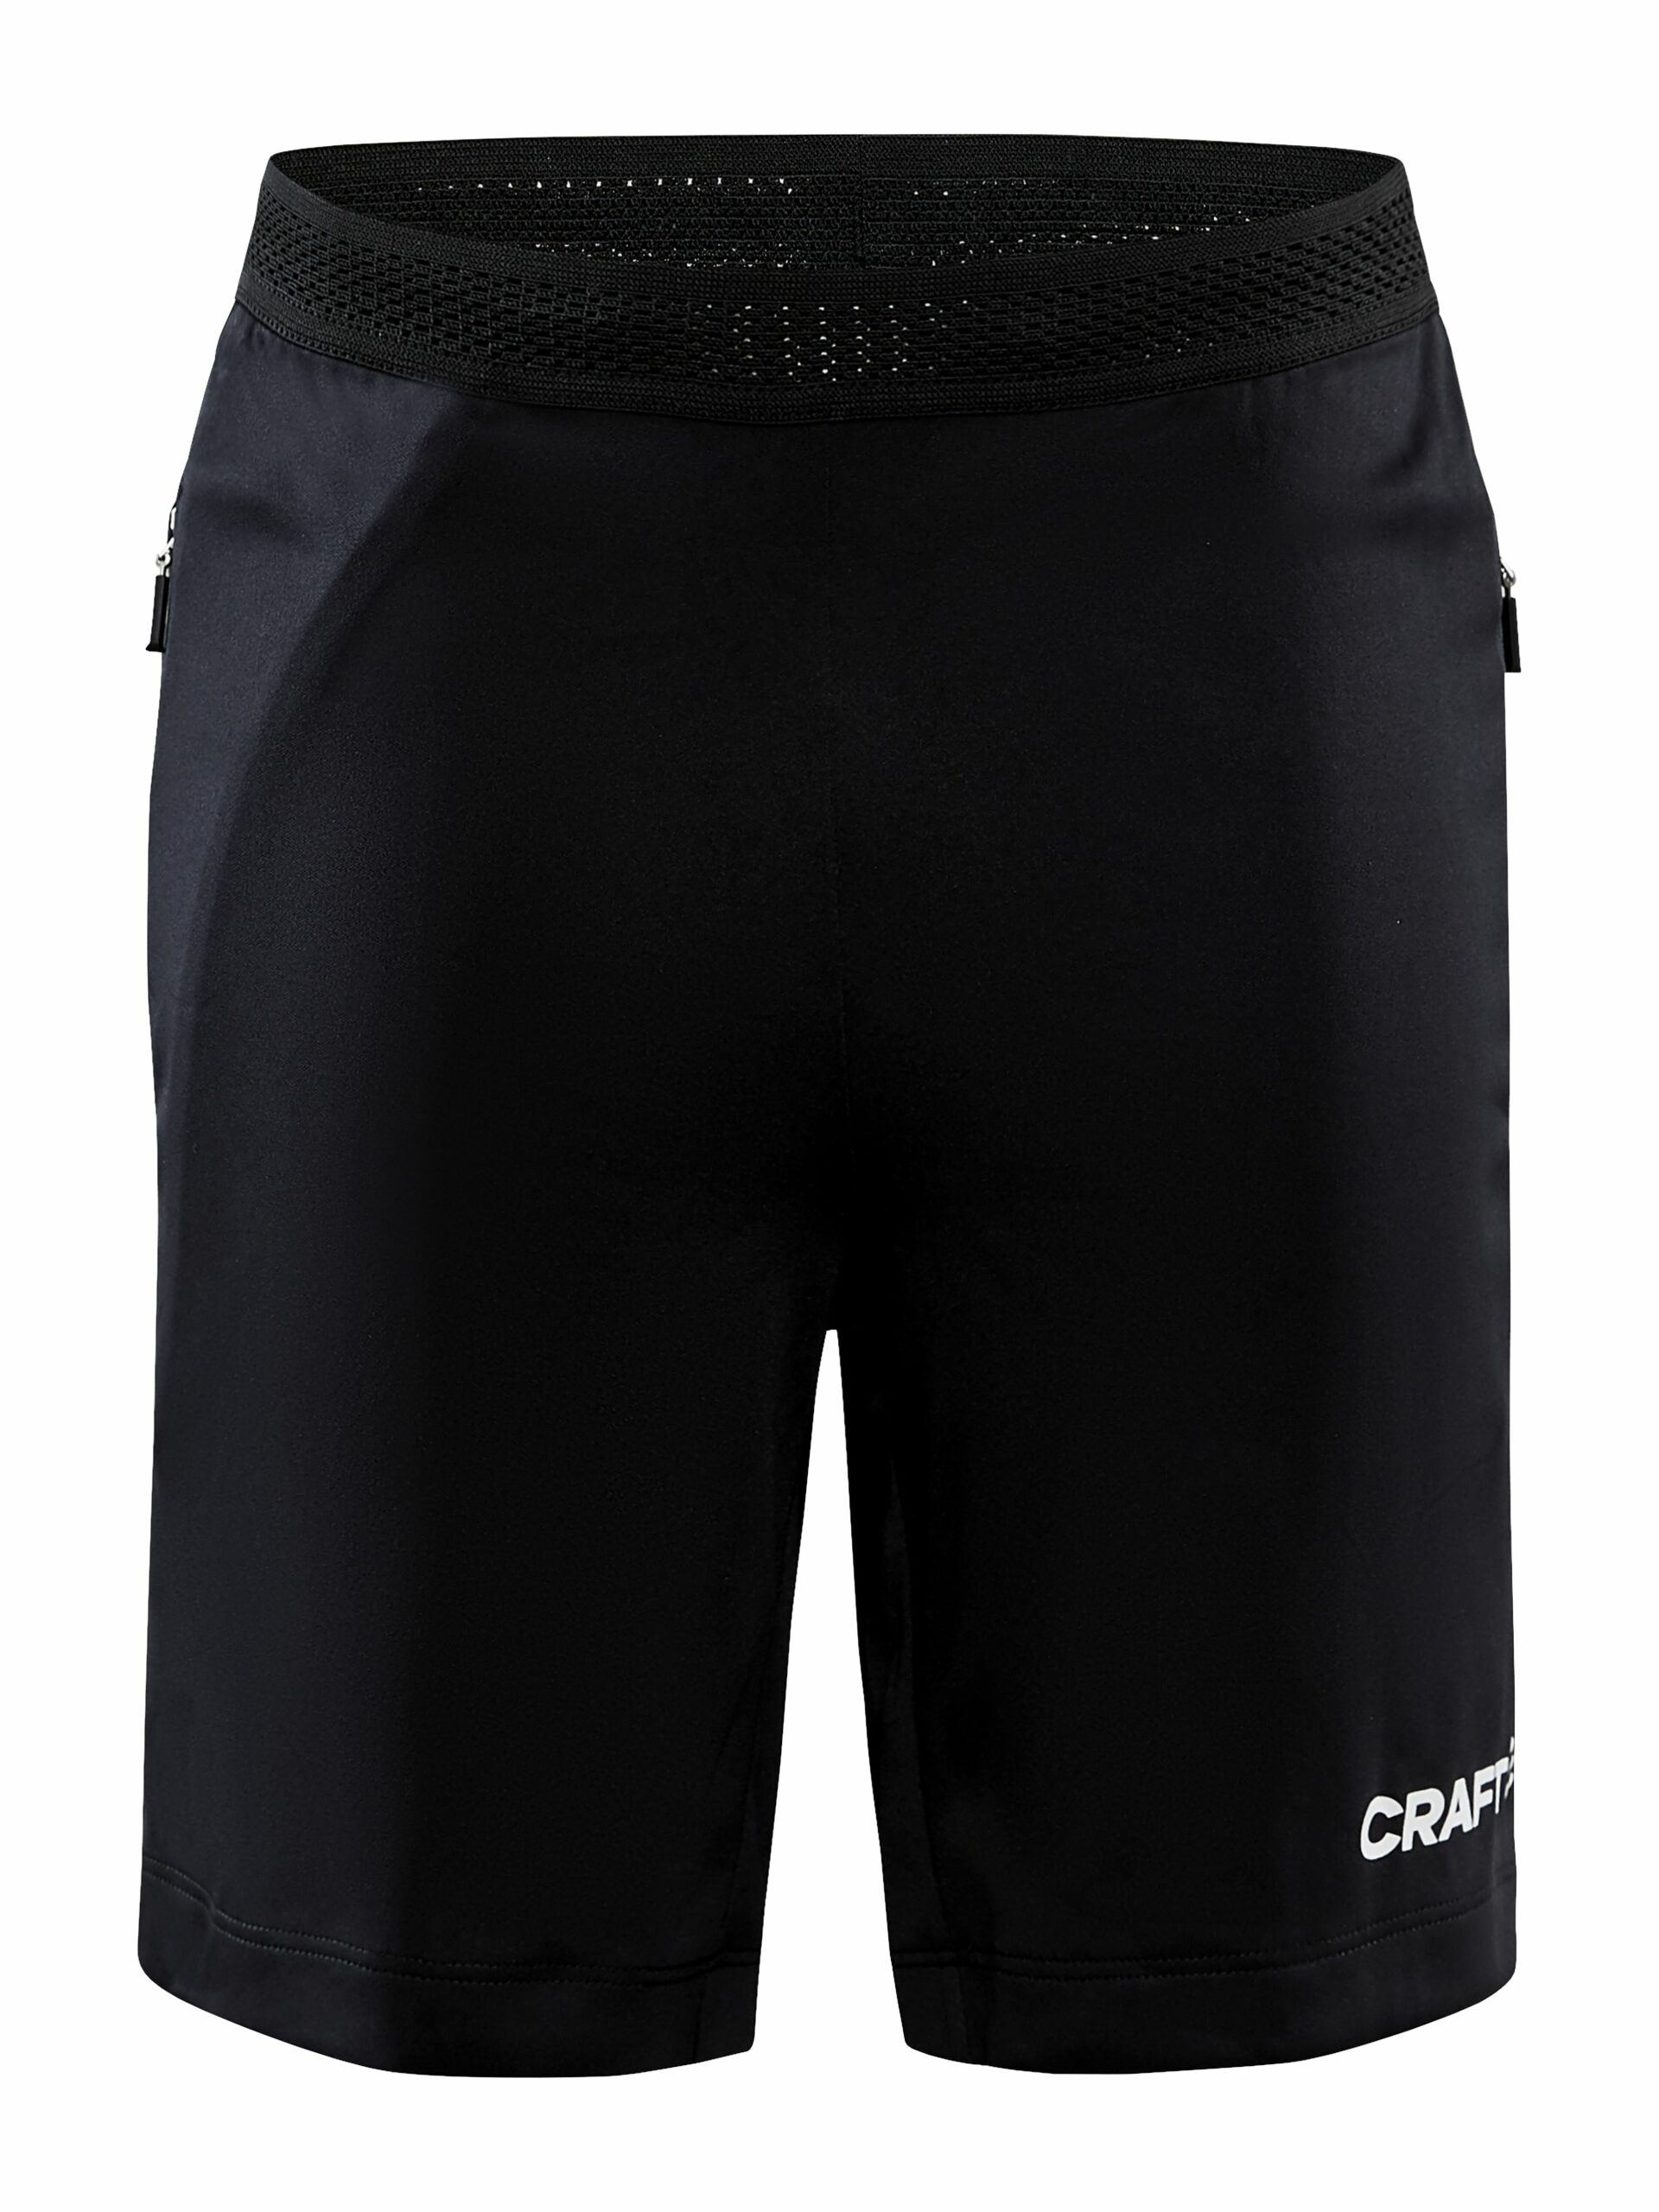 Craft - Evolve Zip Pocket Shorts JR - Black 158/164